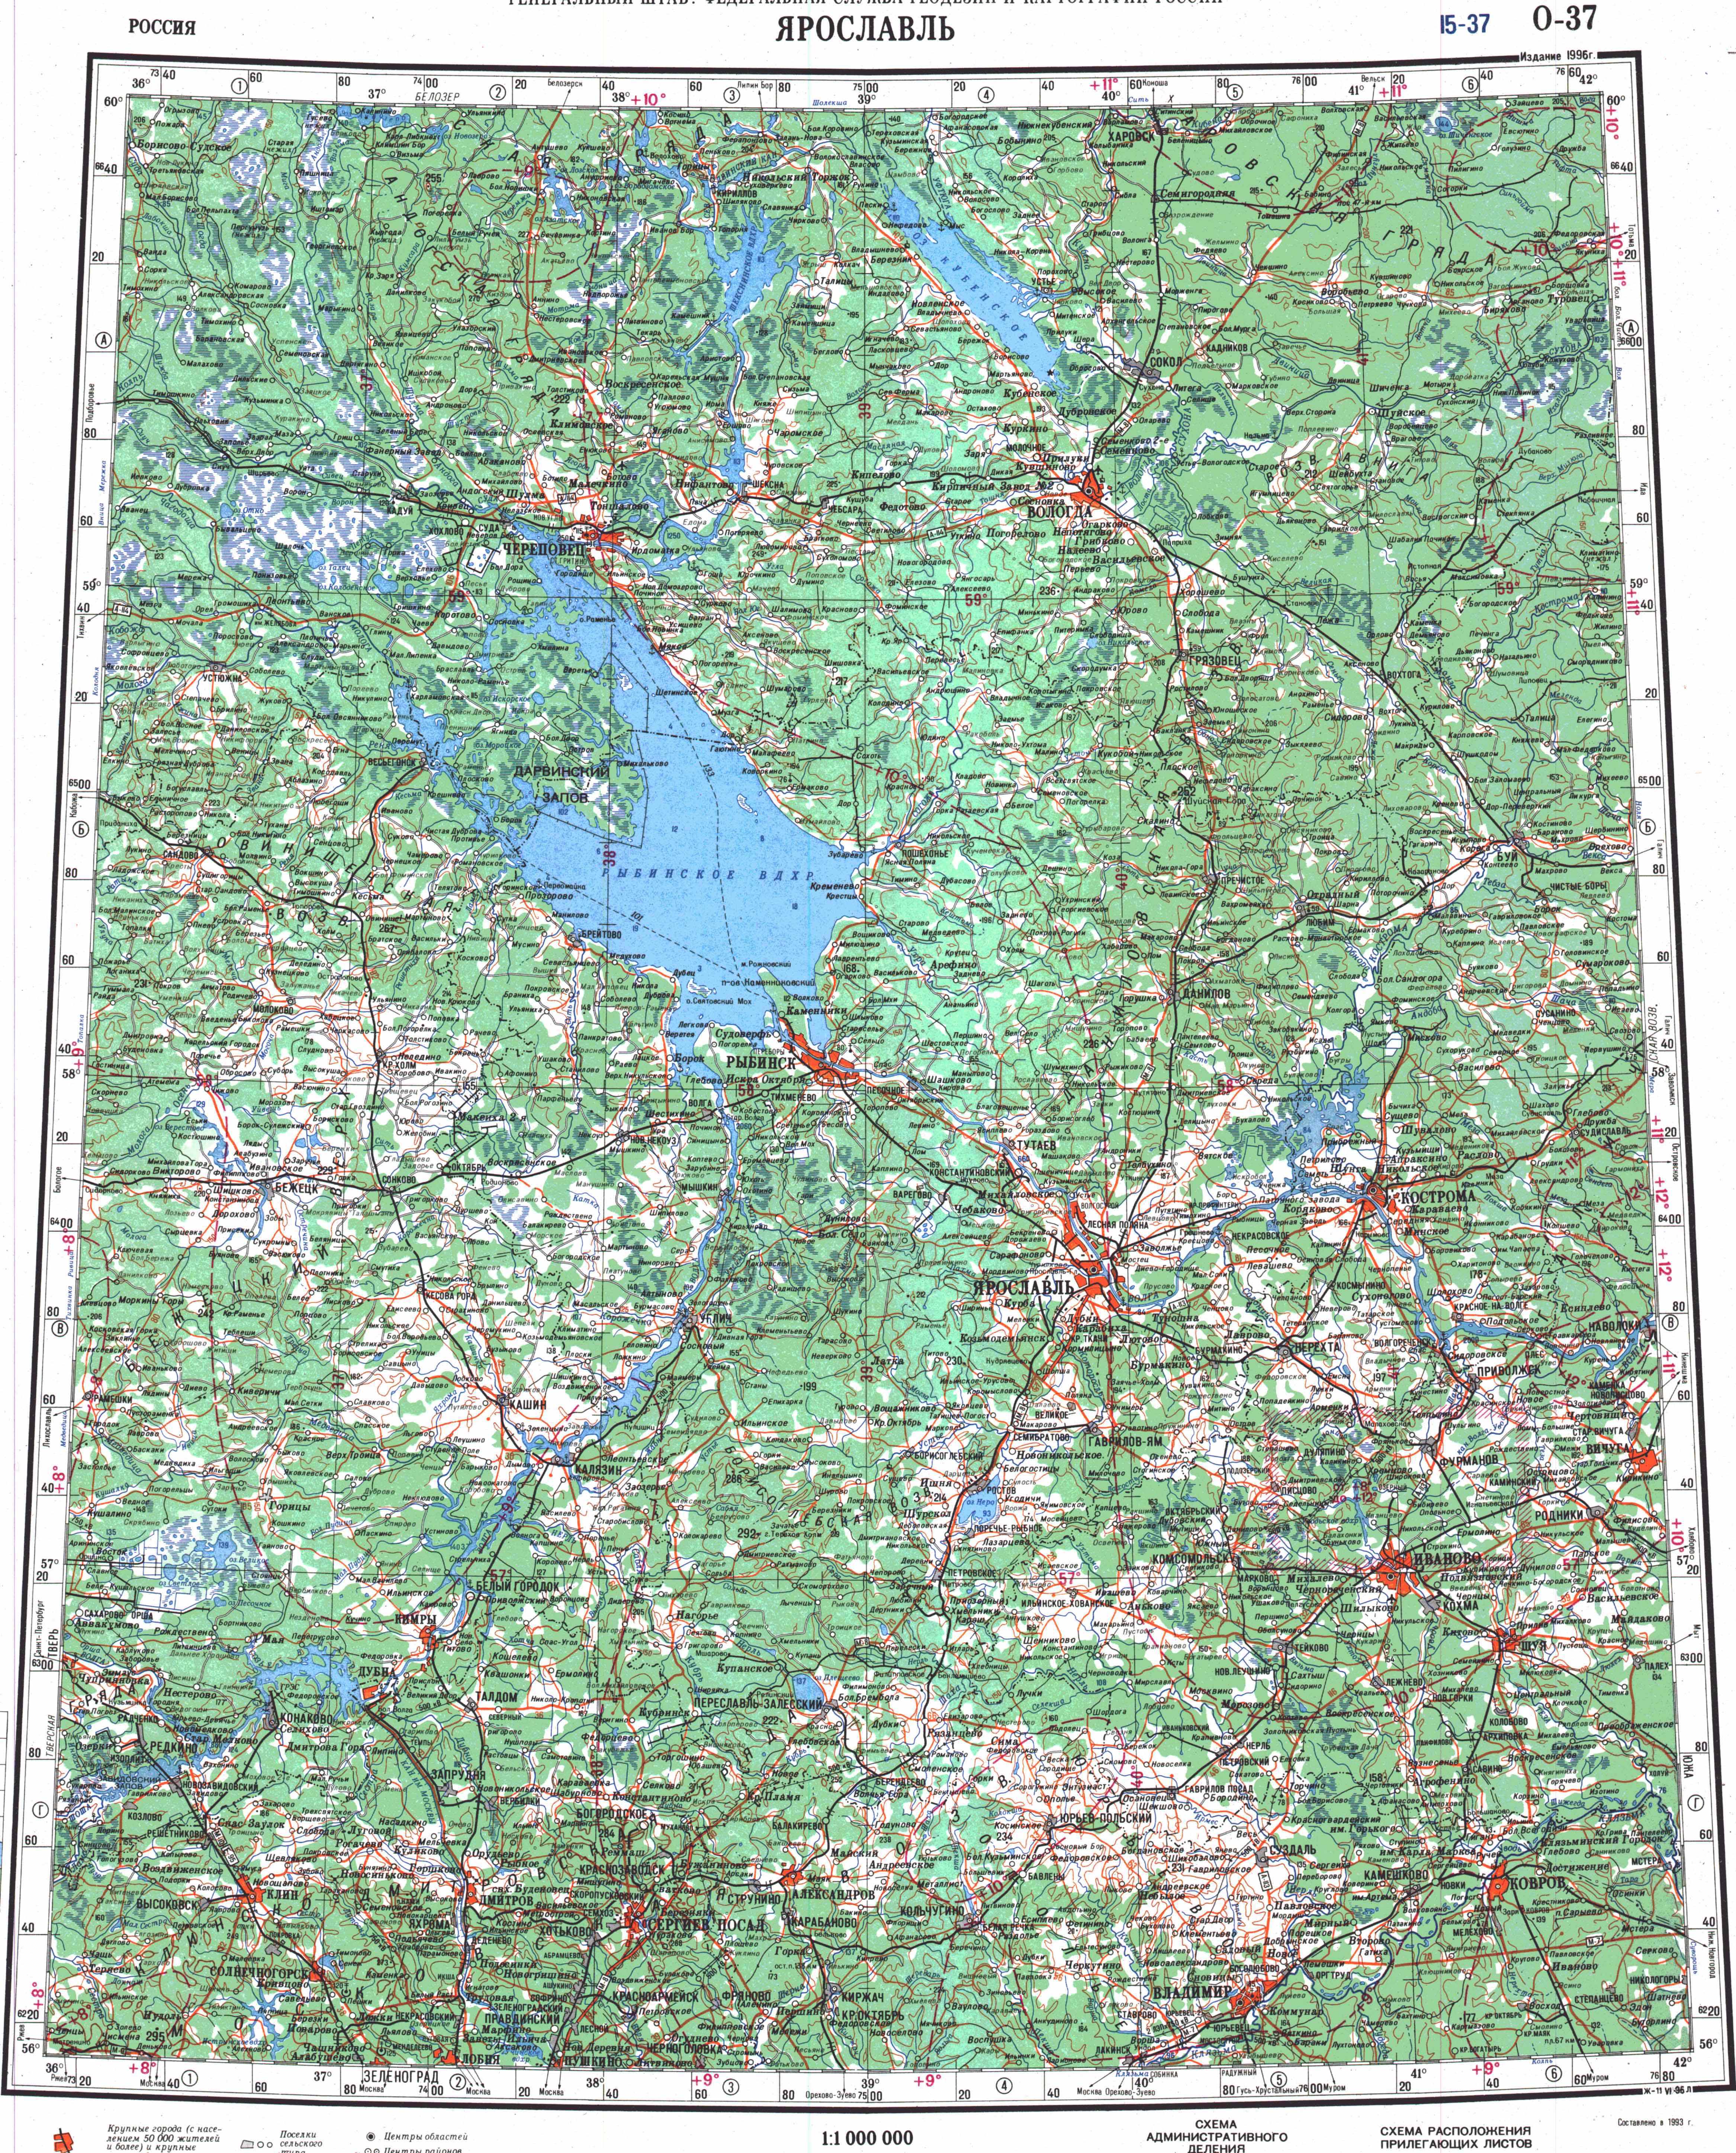 Топографические карты Генштаба / Карты листа O-37 (Ярославль) / Карта масштаба 1:1000000 (десятикилометровка) 